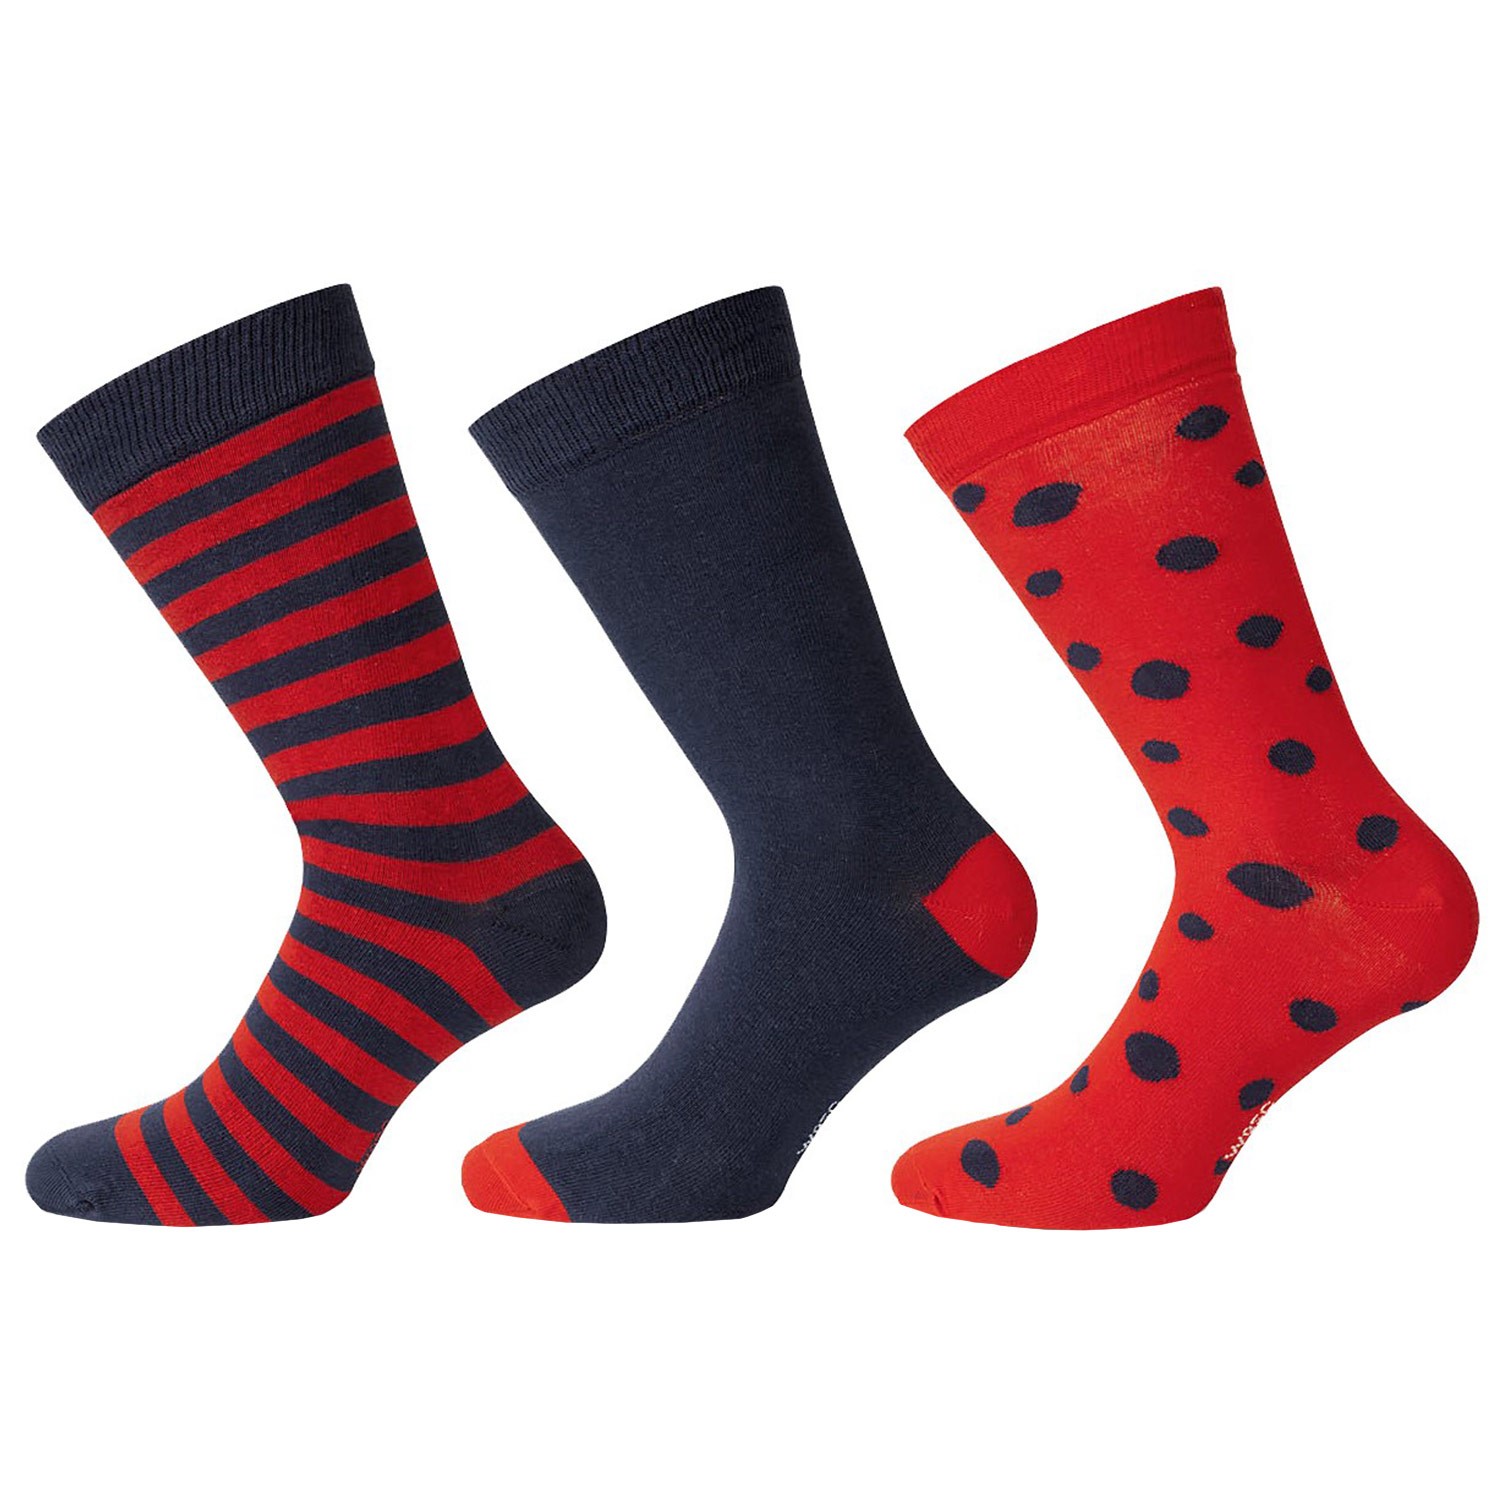 WESC Stanie Multi Pattern Socks